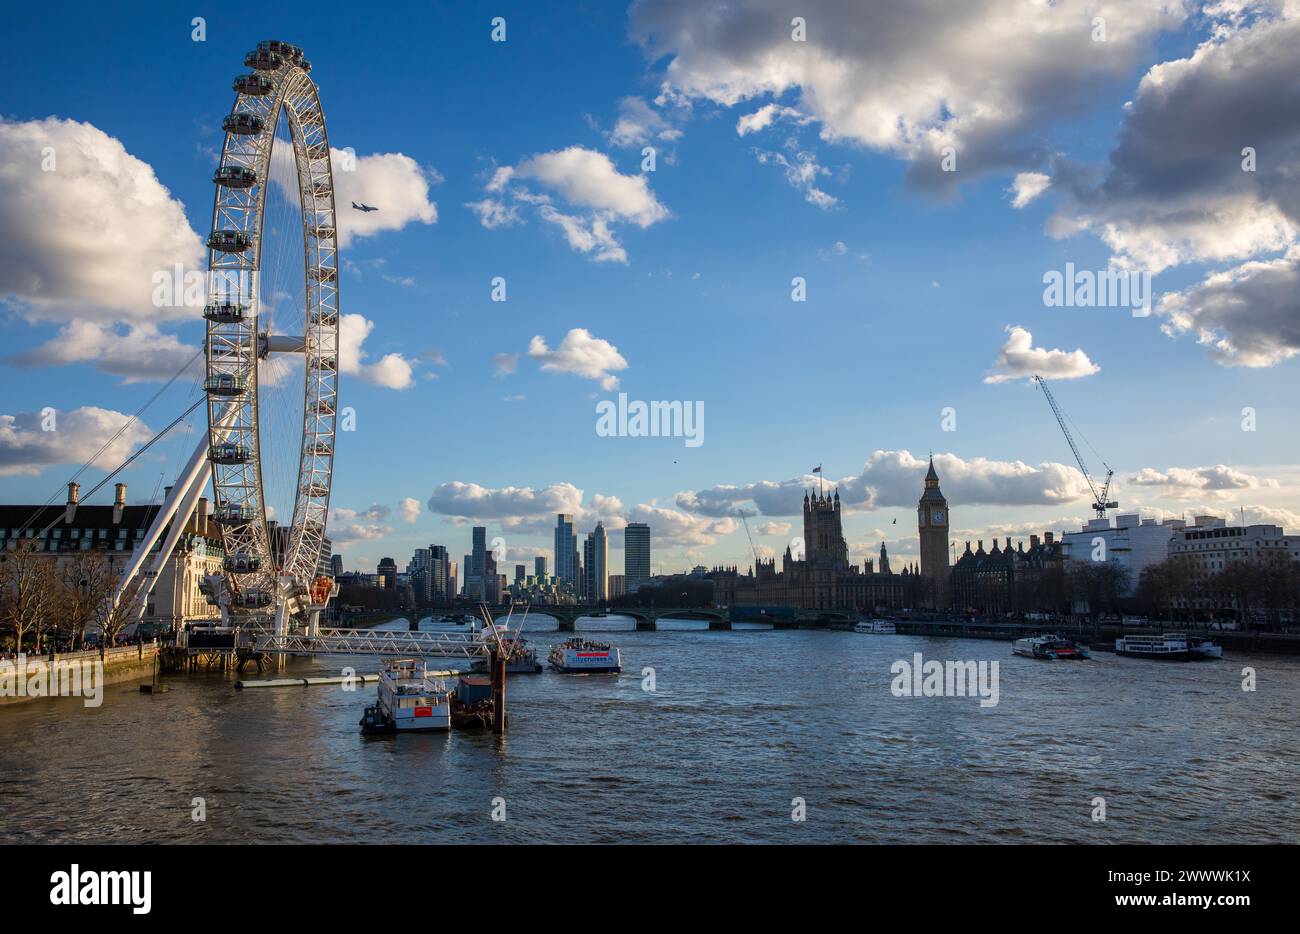 La roue du millénaire sur la rive sud de la Tamise, Londres, Angleterre, Royaume-Uni Banque D'Images